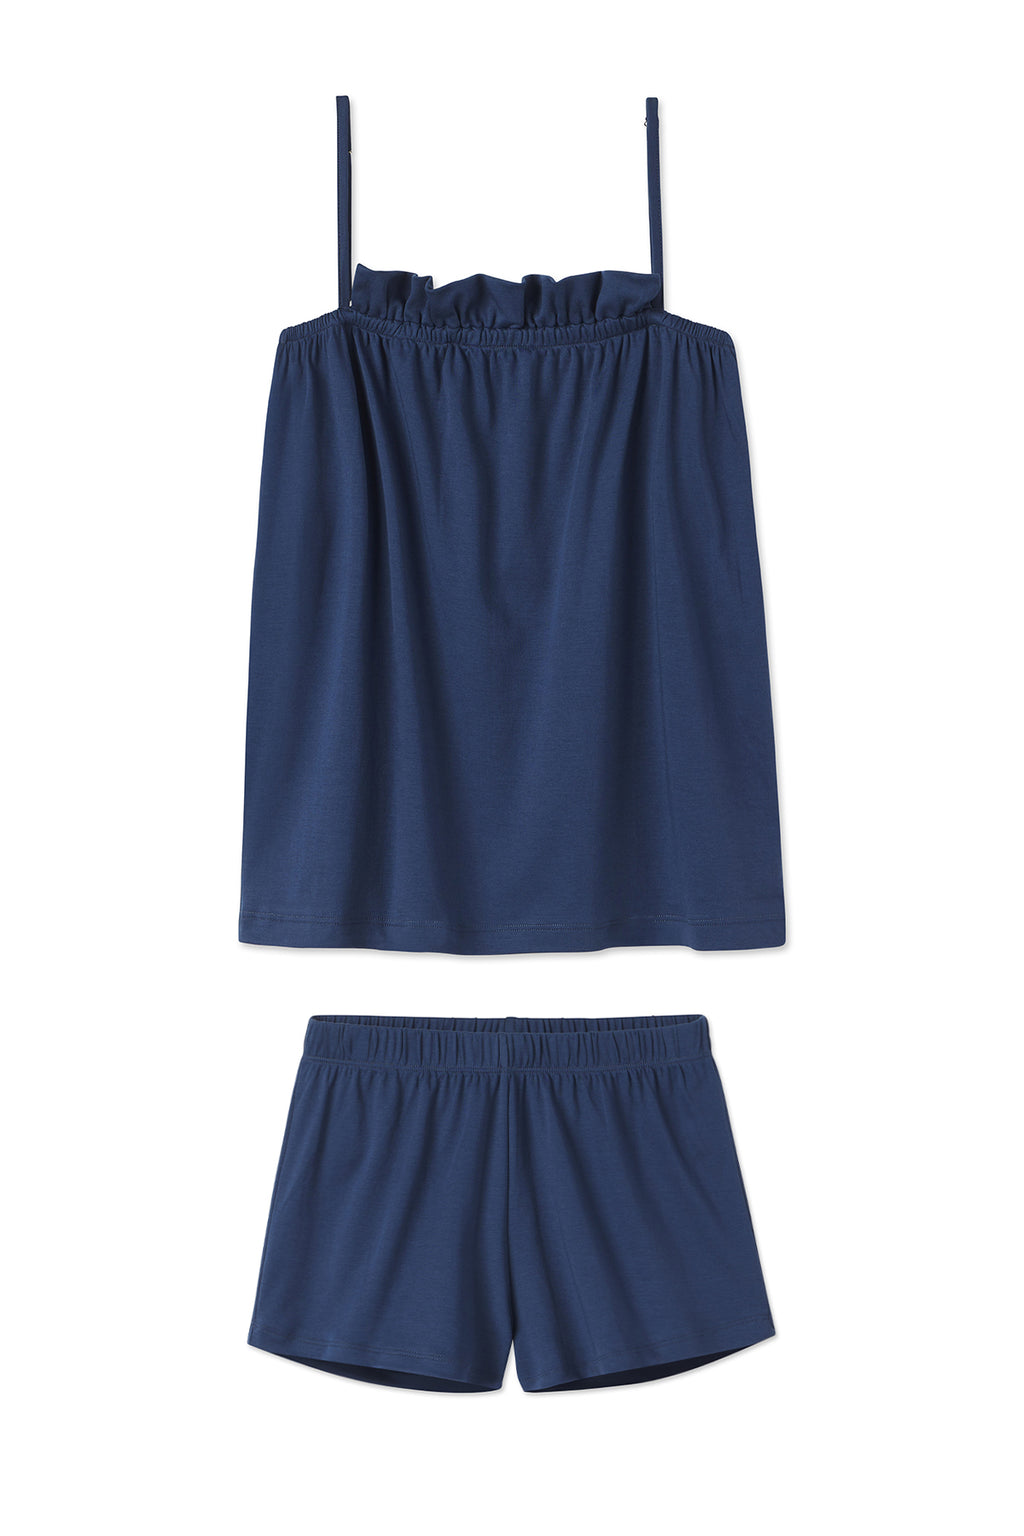 Light Blue Lounge Shorts - Pointelle Shorts - Ruffled Shorts - Lulus